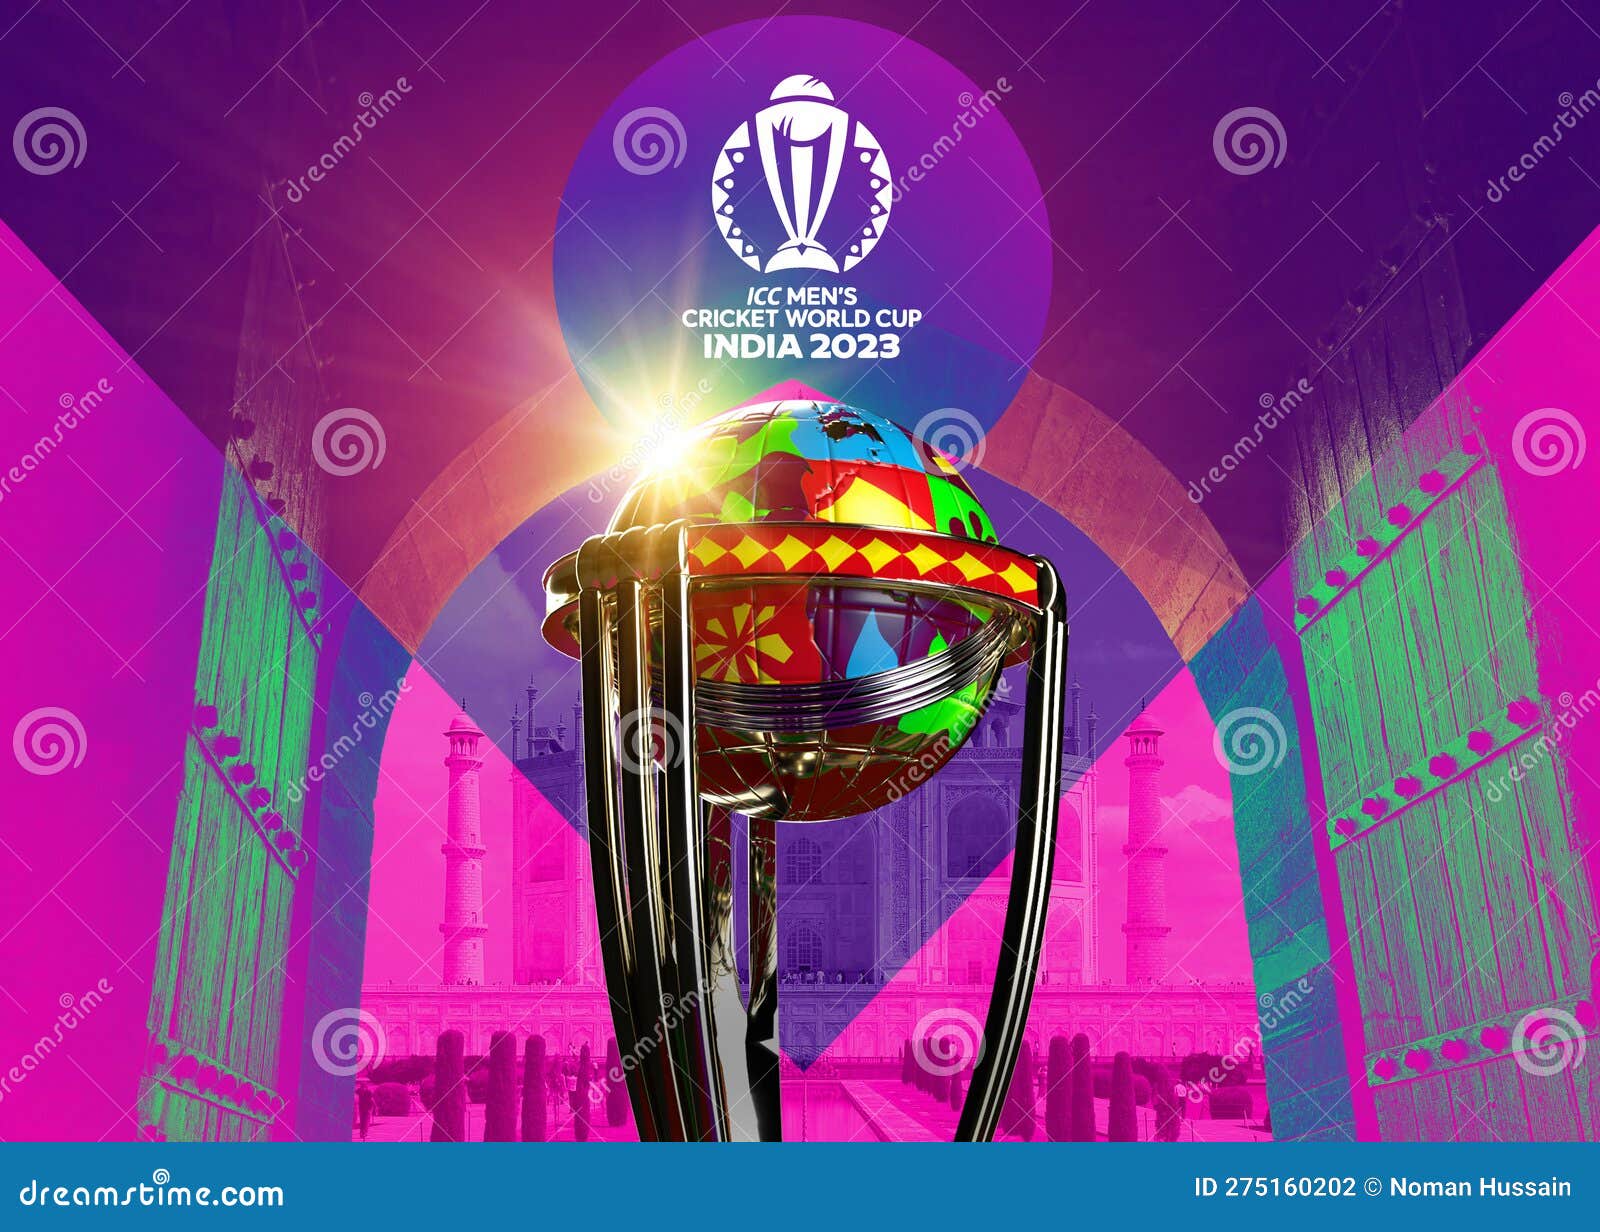 Icc Mens Cricket World Cup 2023 In India Fotografía Editorial